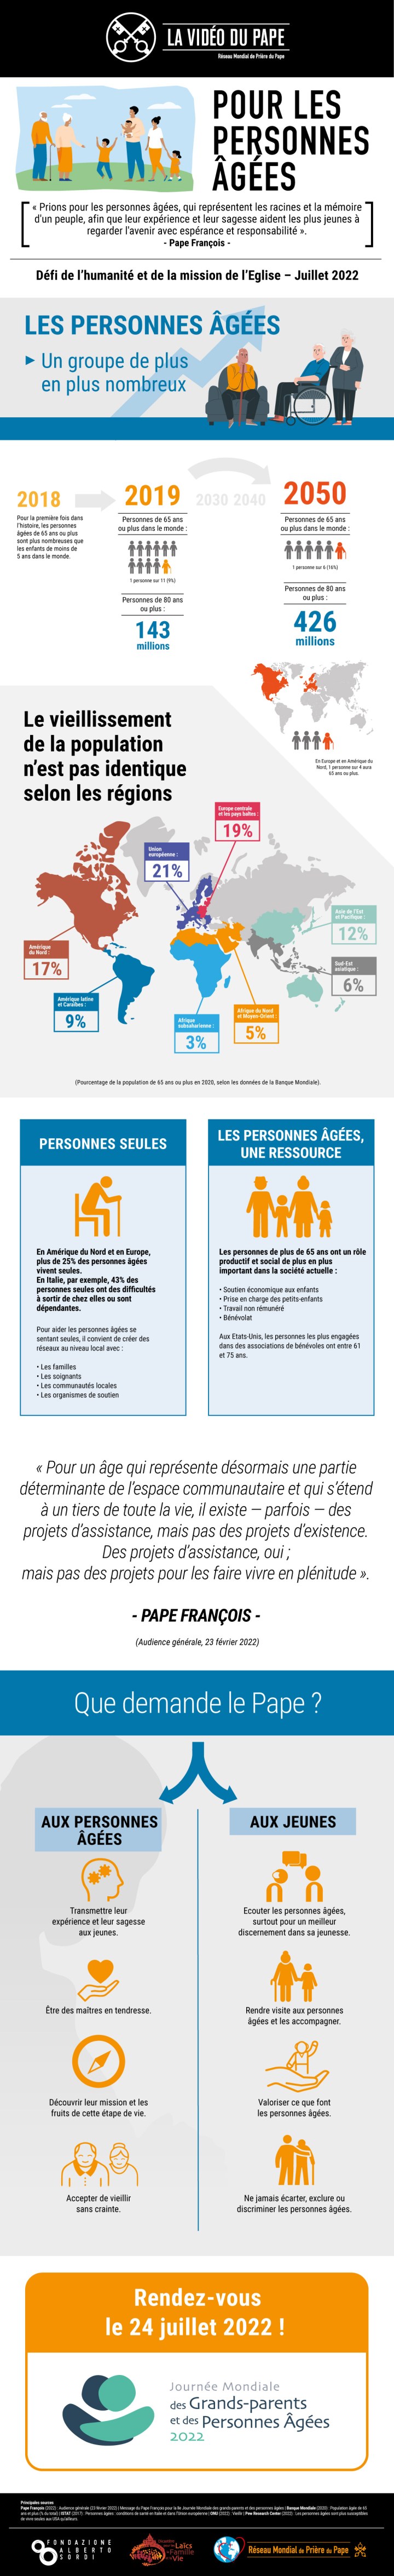 Infographic-TPV-7-2022-FR-Pour-les-personnes-agees.jpg